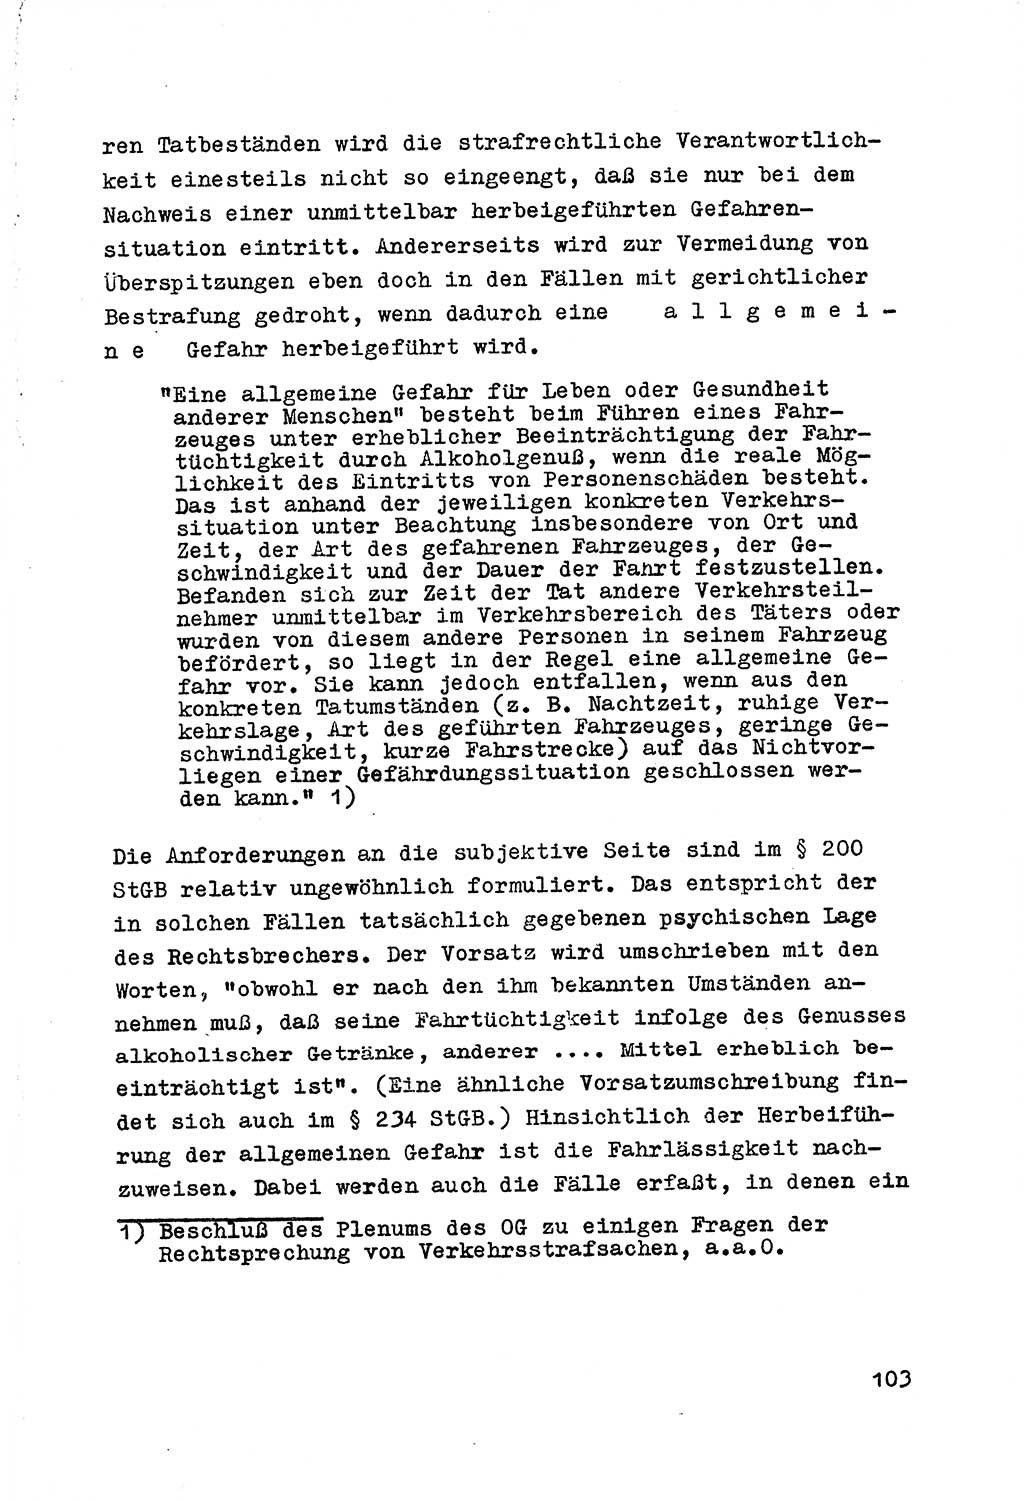 Strafrecht der DDR (Deutsche Demokratische Republik), Besonderer Teil, Lehrmaterial, Heft 7 1970, Seite 103 (Strafr. DDR BT Lehrmat. H. 7 1970, S. 103)